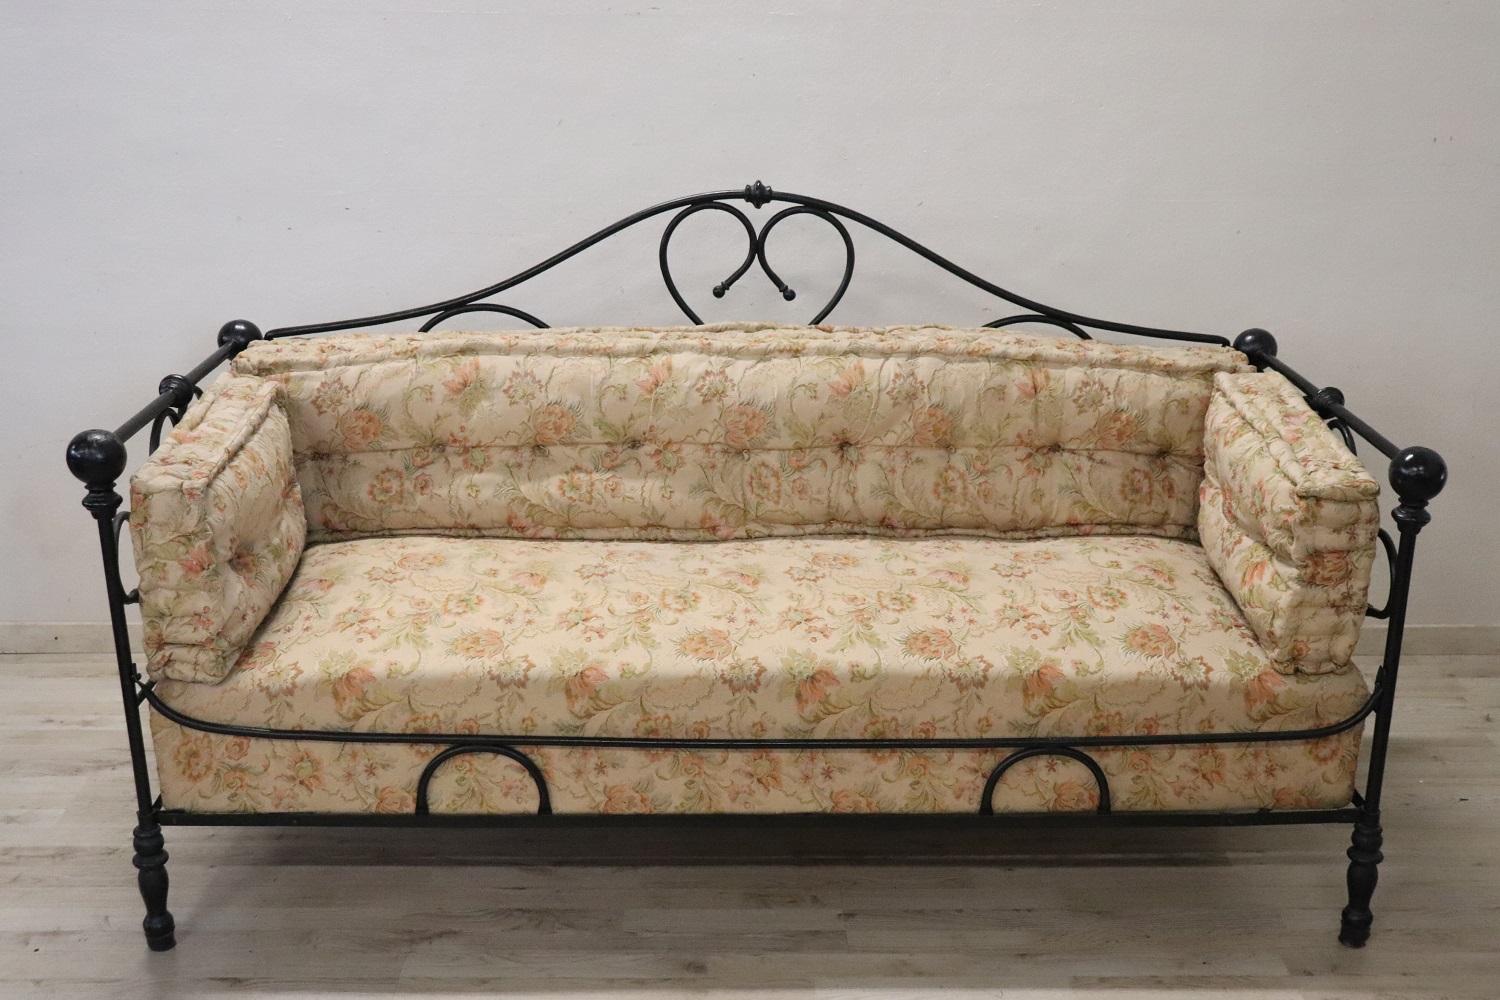 Seltene italienische antike große Couch, Ende 19. Jahrhundert. Die Sitzgruppe ist aus massivem Eisen gefertigt. Das Eisen hat eine raffinierte und aufwendige Verzierung mit Locken und Schnörkeln. Die Dekoration ist auf beiden Seiten vorhanden, so